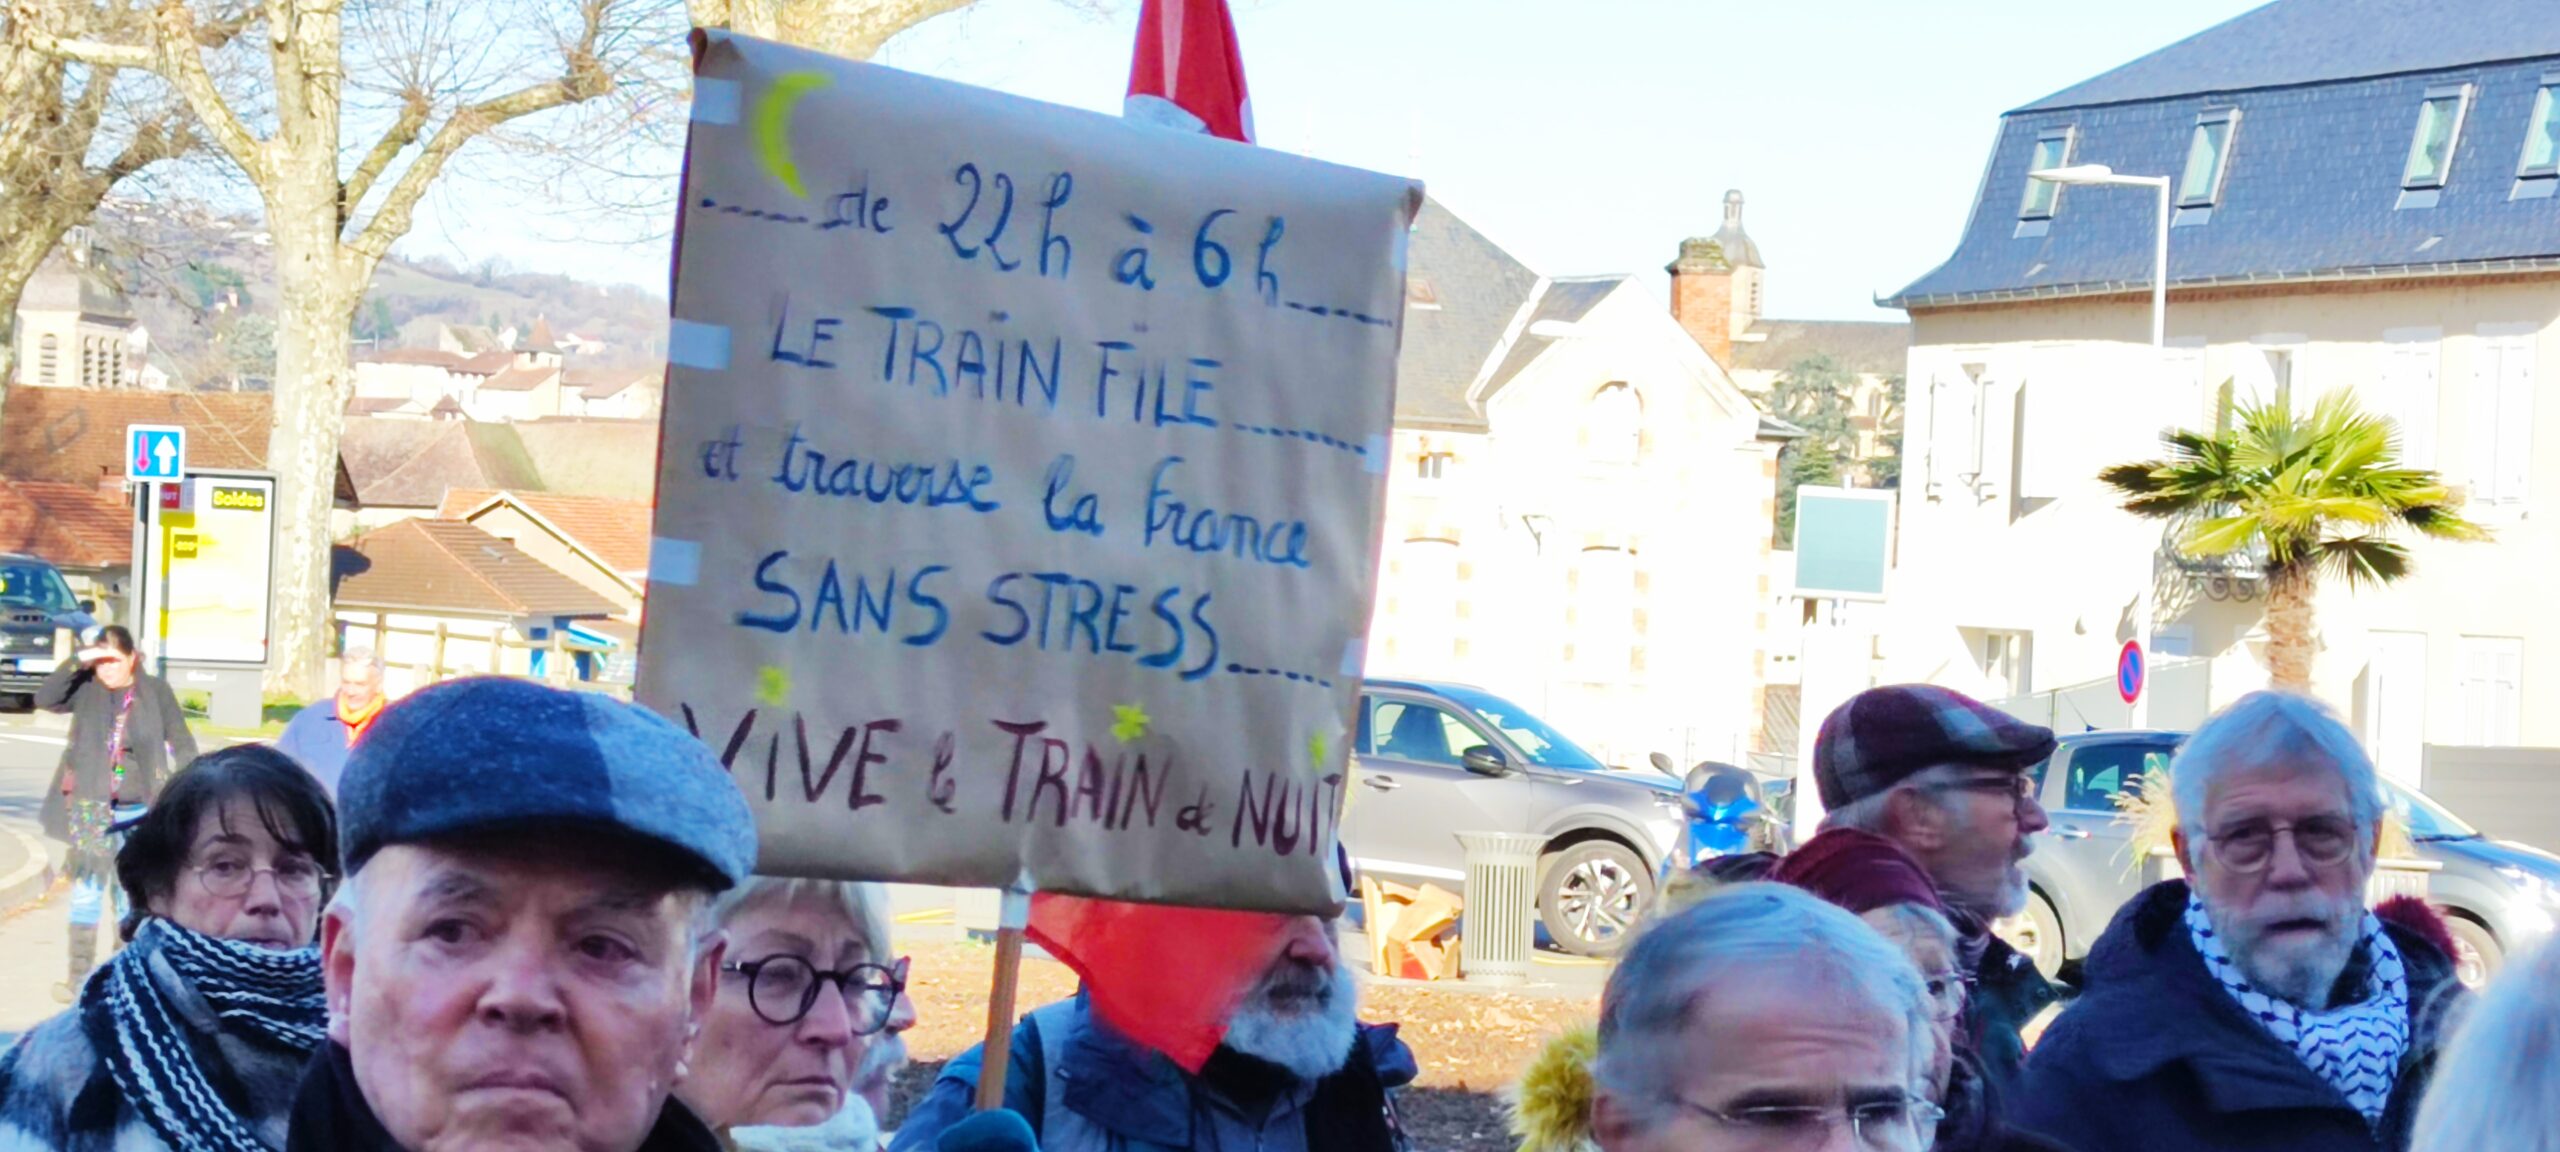 Actualité des trains de nuit en France : une analyse du collectif sud-normand de la CNR